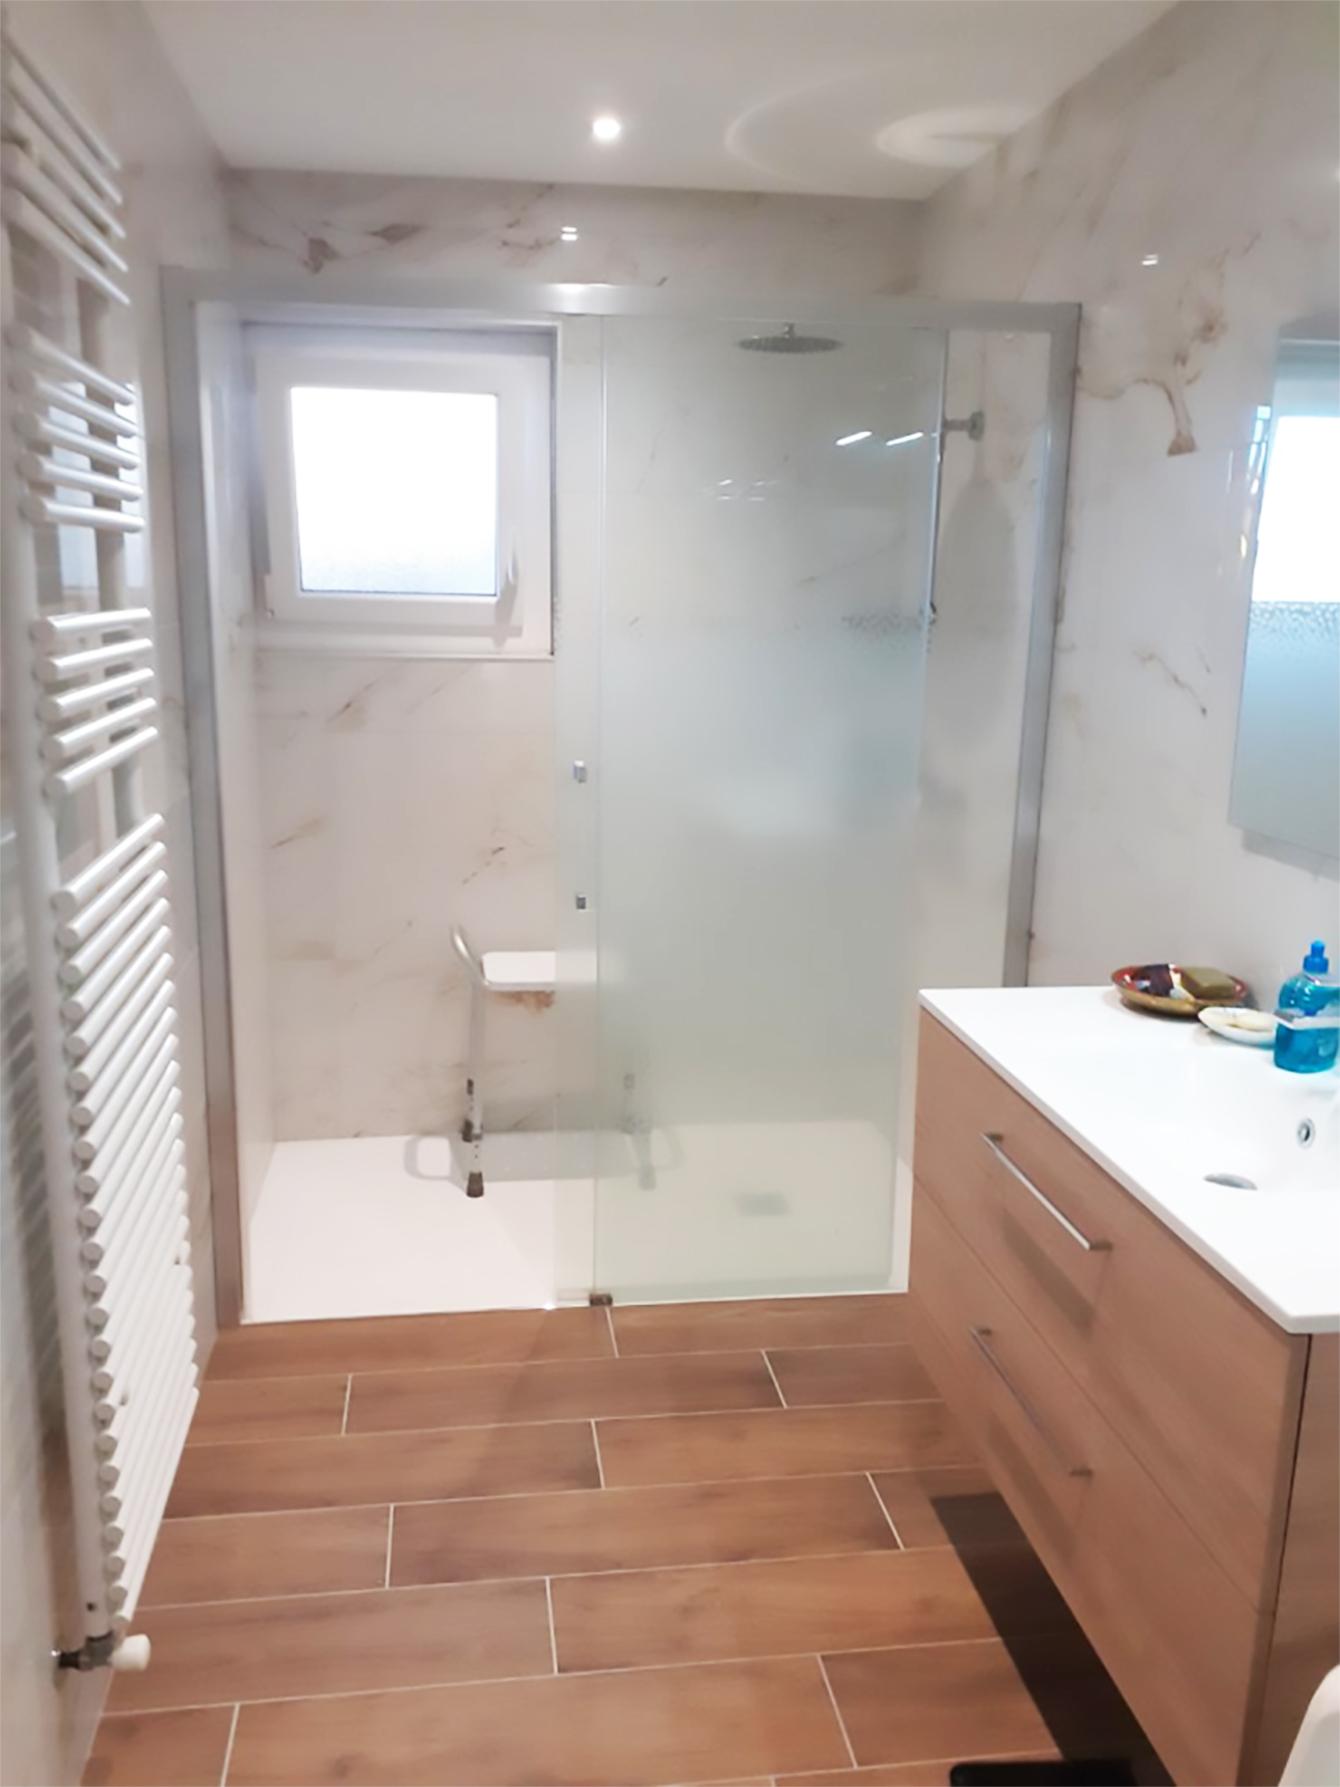 Rénovation complète de la salle de bain réalisée par Carrélia à Valence